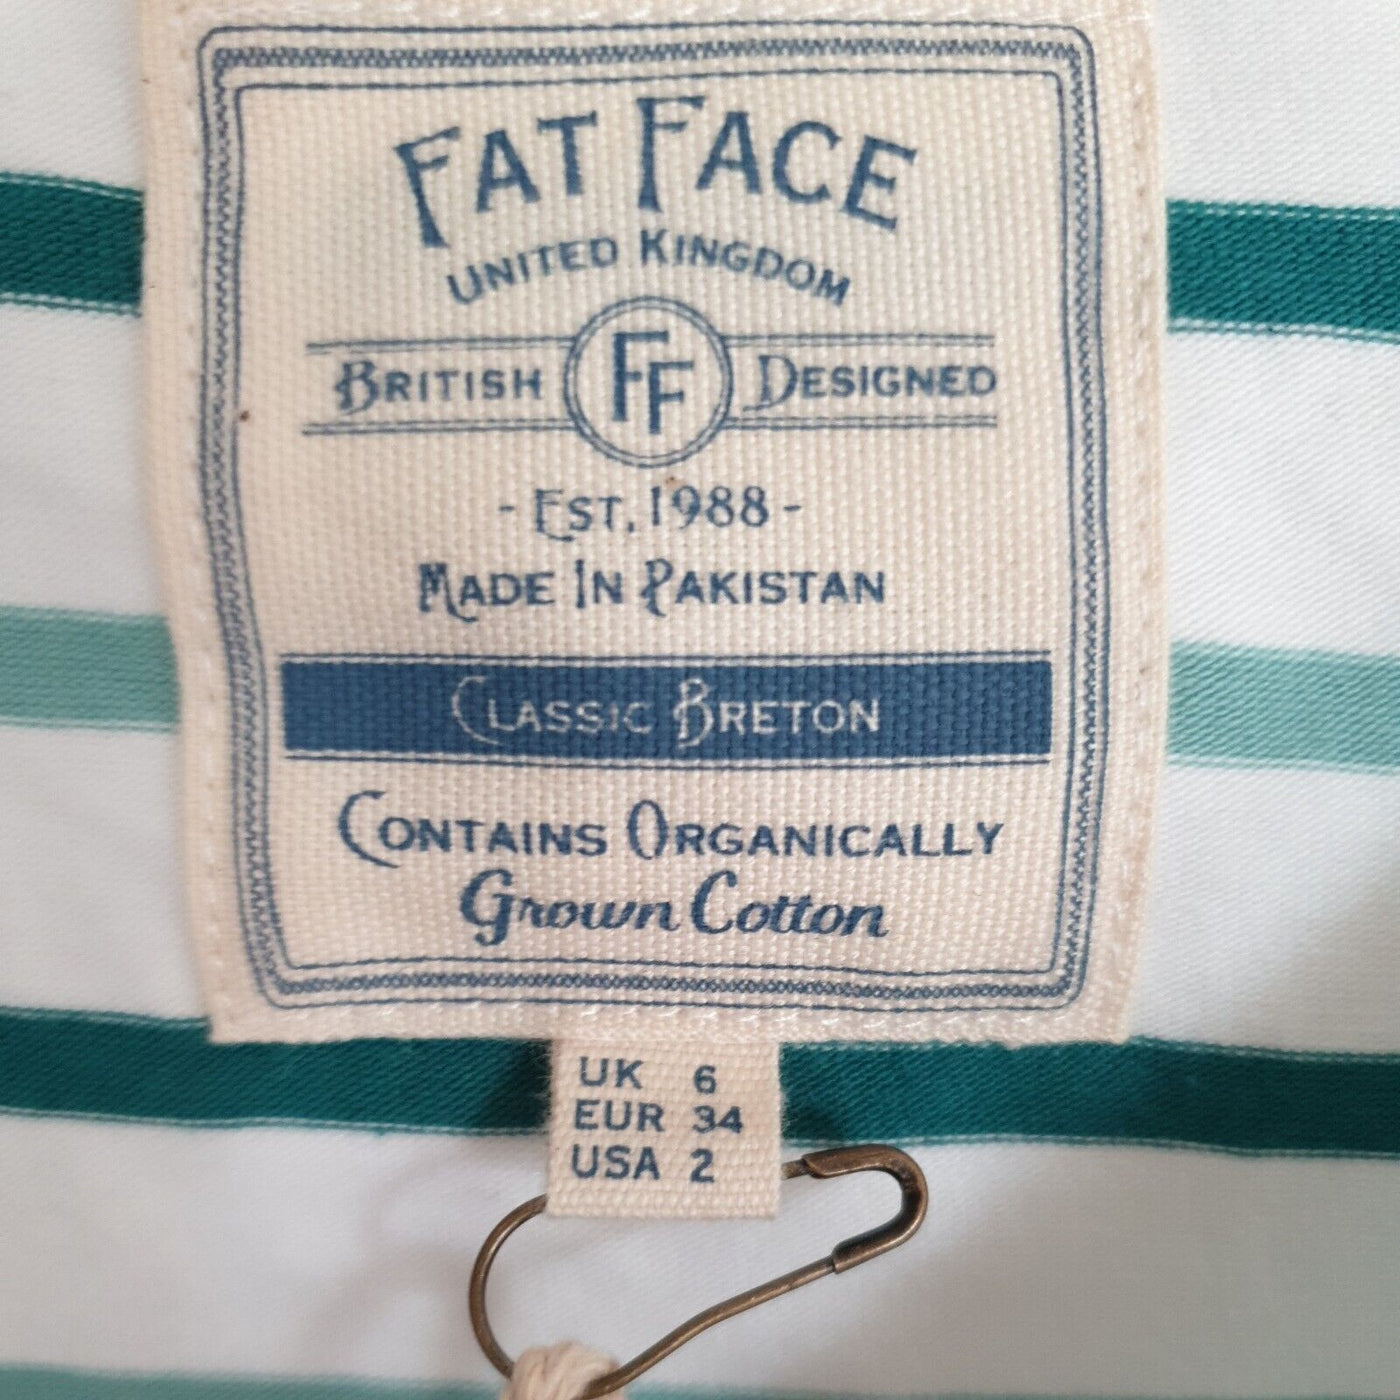 fat face Organic Cotton Multi Dark Grey Tshirt UK 6****Ref V317